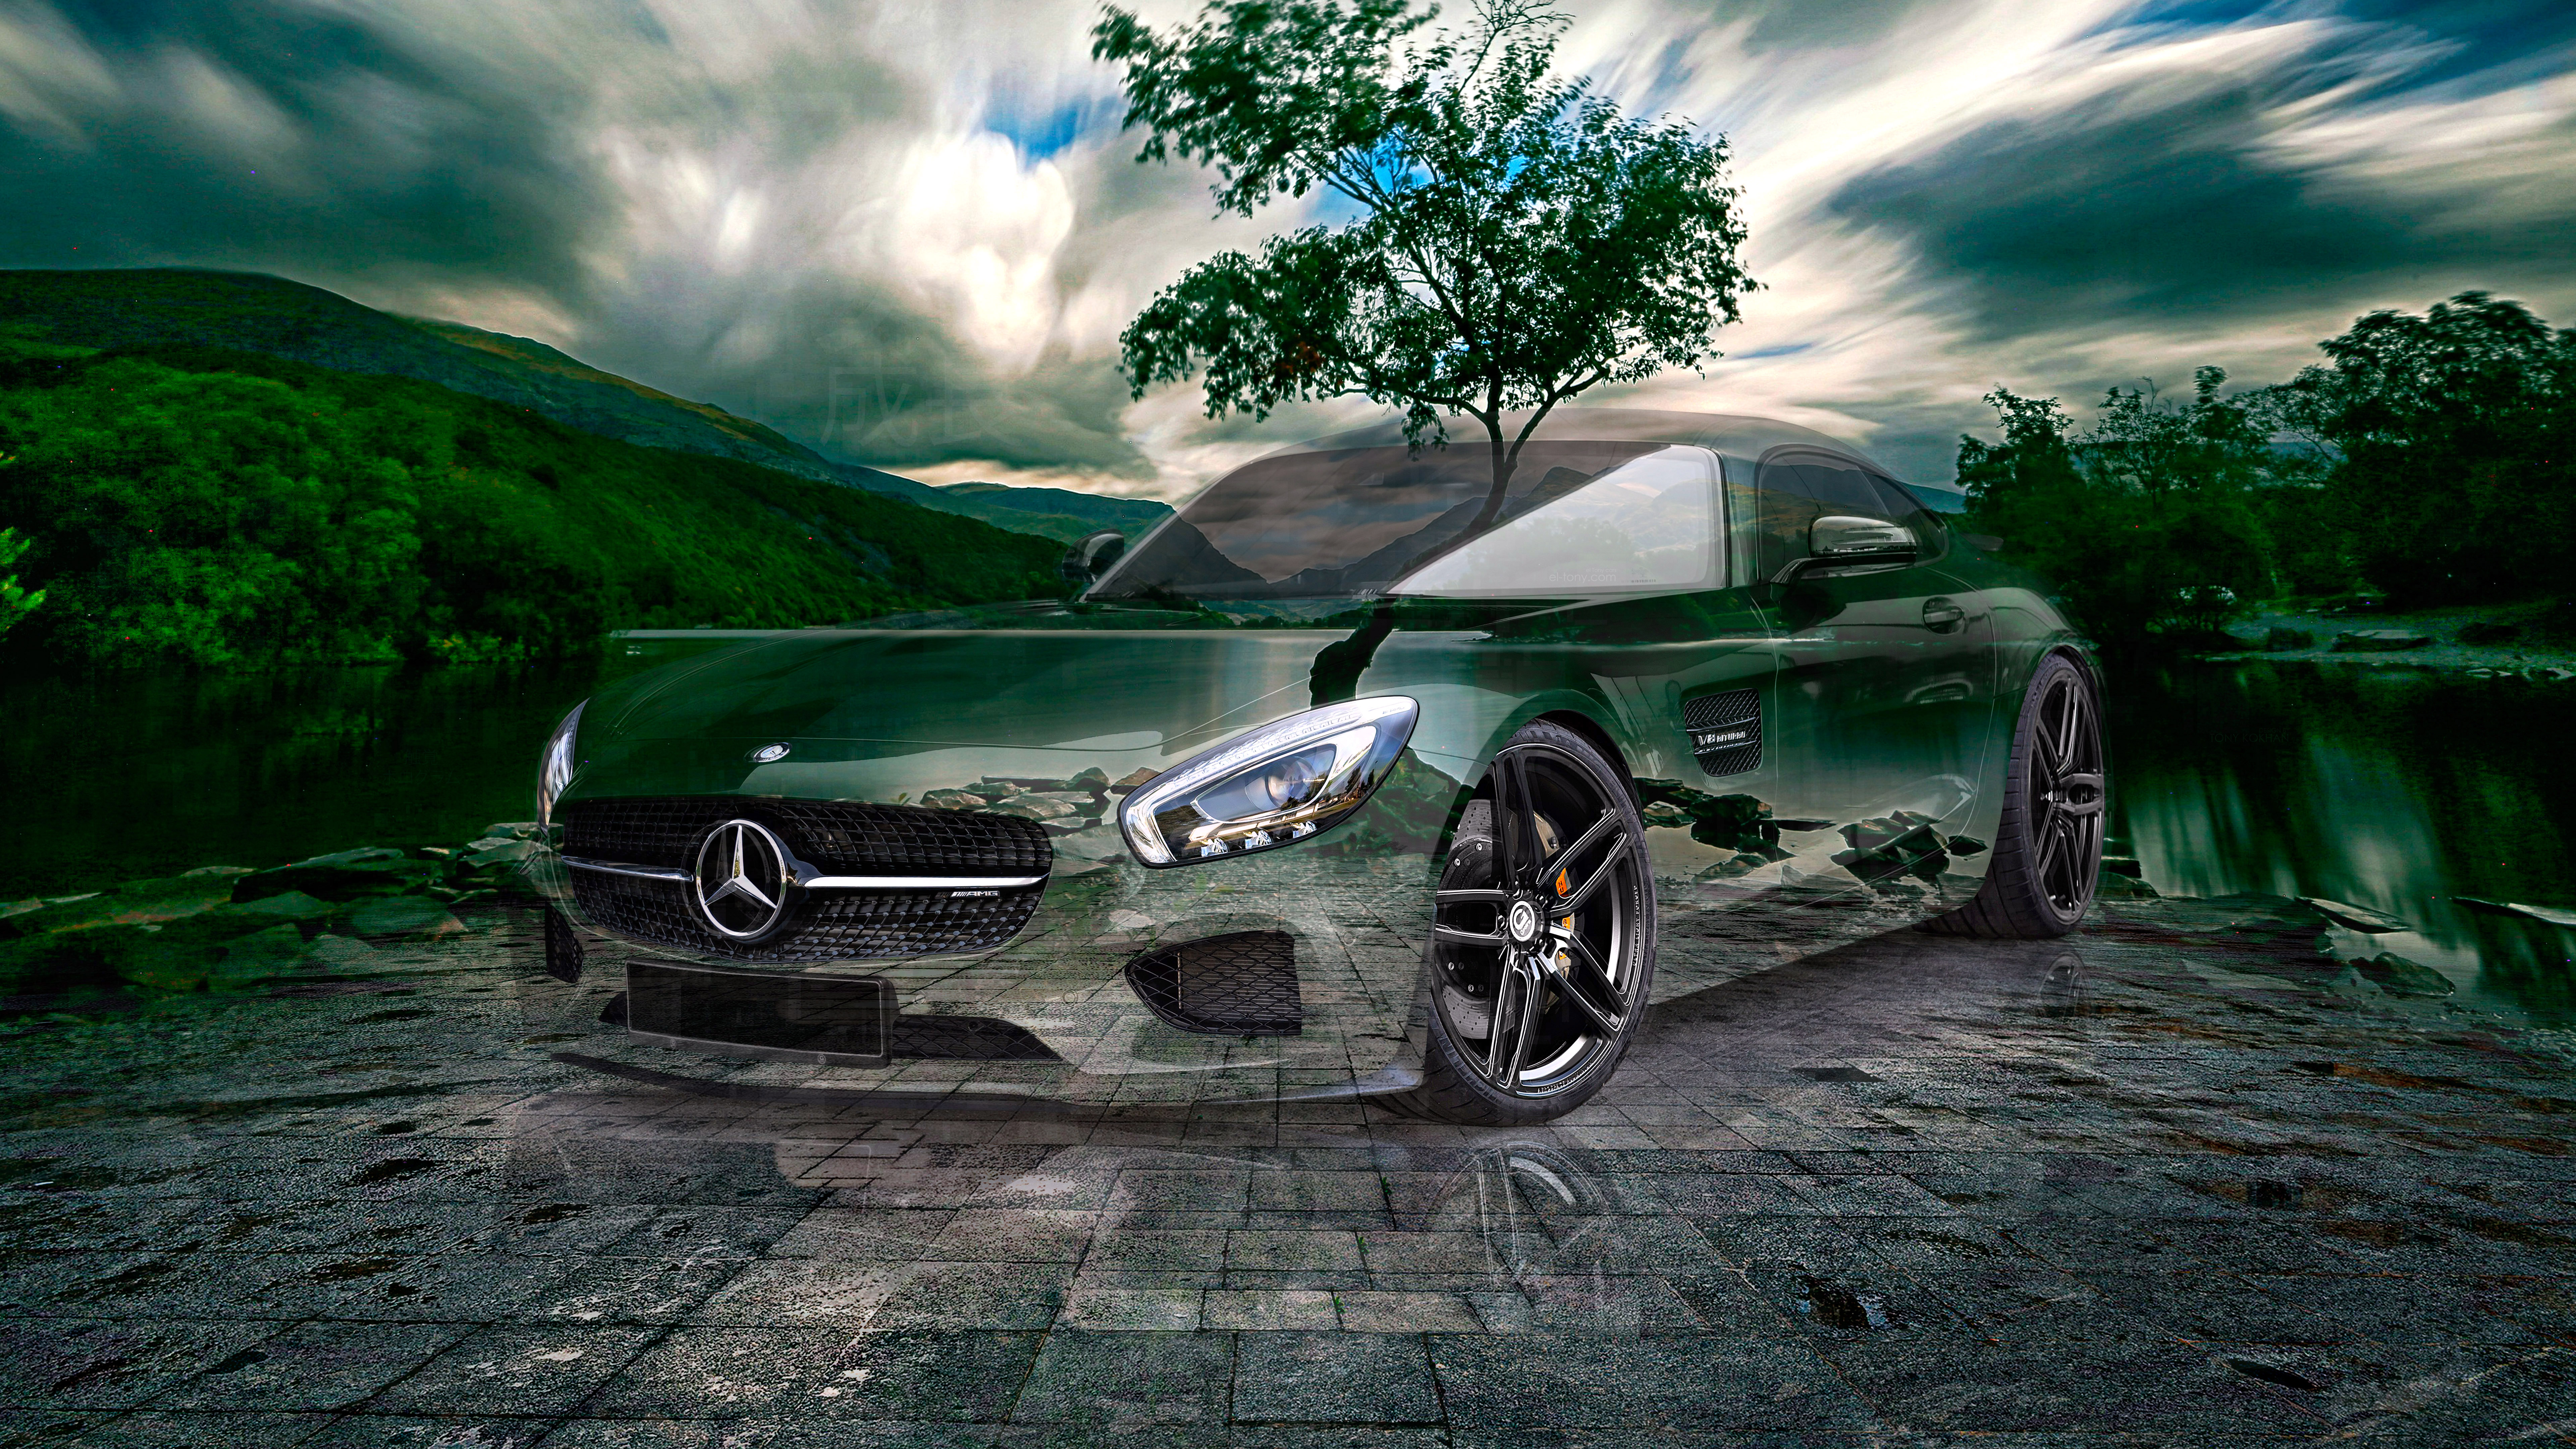 Mercedes-GT-AMG-Tuning-G-Power-Super-Crystal-Growth-Soul-Llyn-Padarn-Tree-Nature-Art-Car-2023